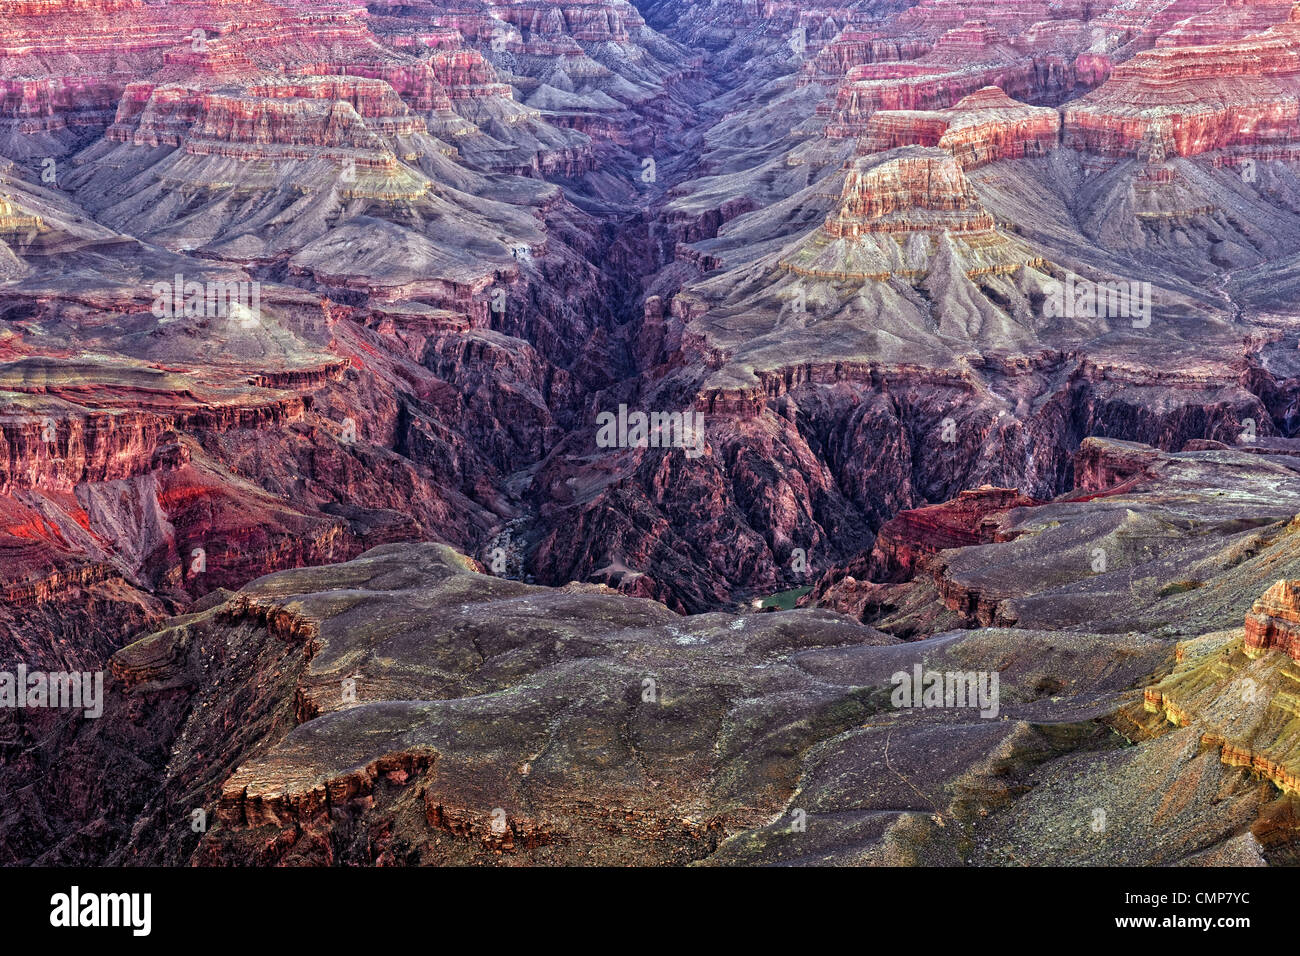 Bürgerlichen Dämmerung verstärkt die Farben des Bright Angel Canyon in Arizona Grand Canyon National Park vom Mather Point. Stockfoto